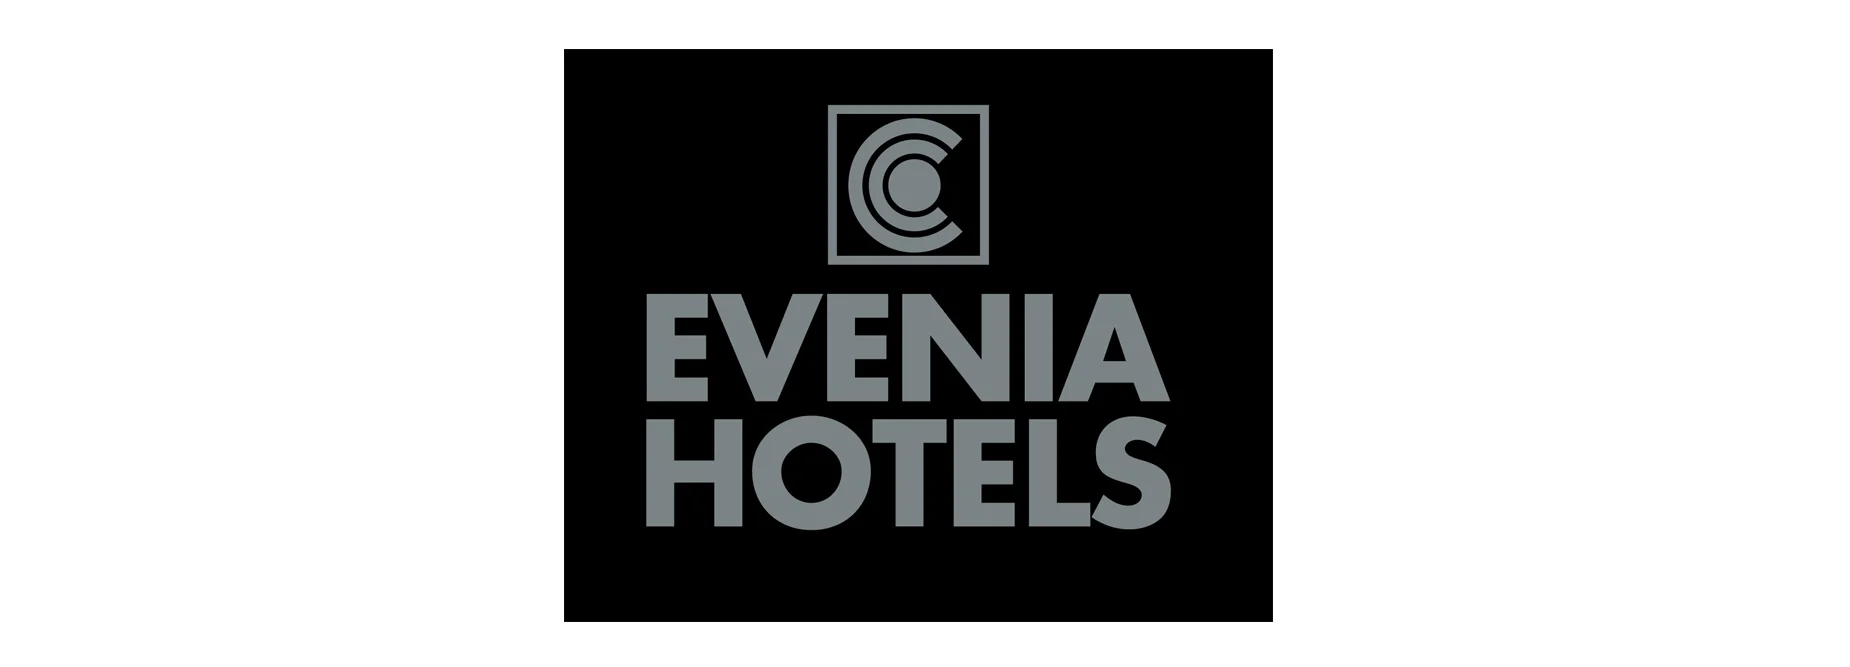 evenia hotels lp